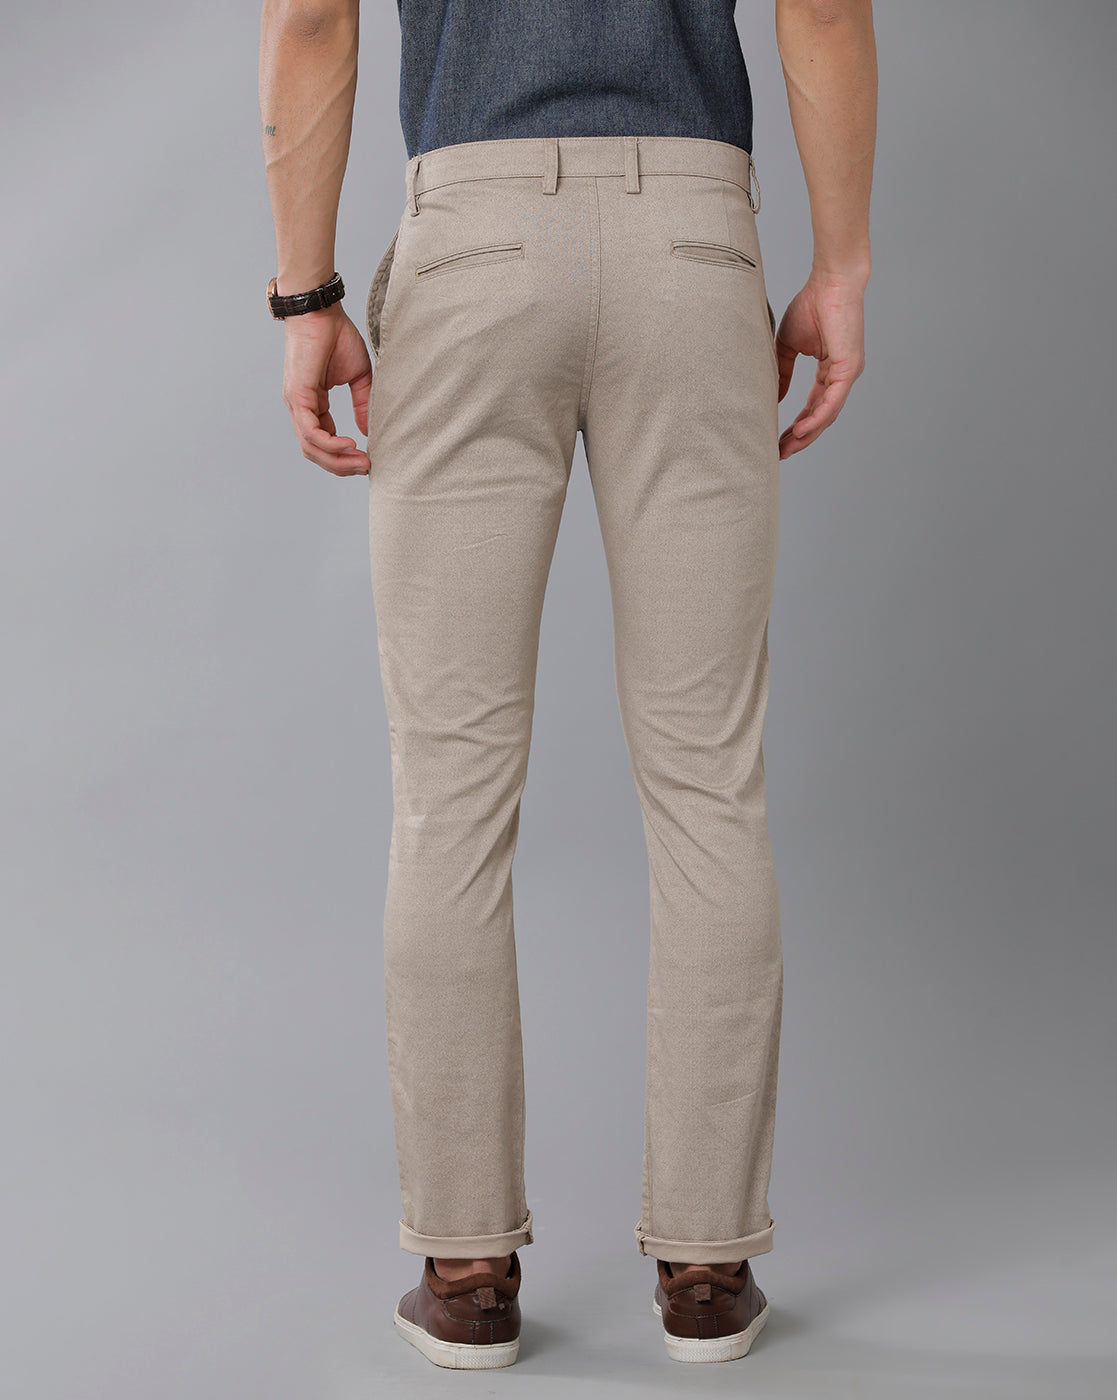 Men Beige Trousers - Buy Men Beige Trousers online in India